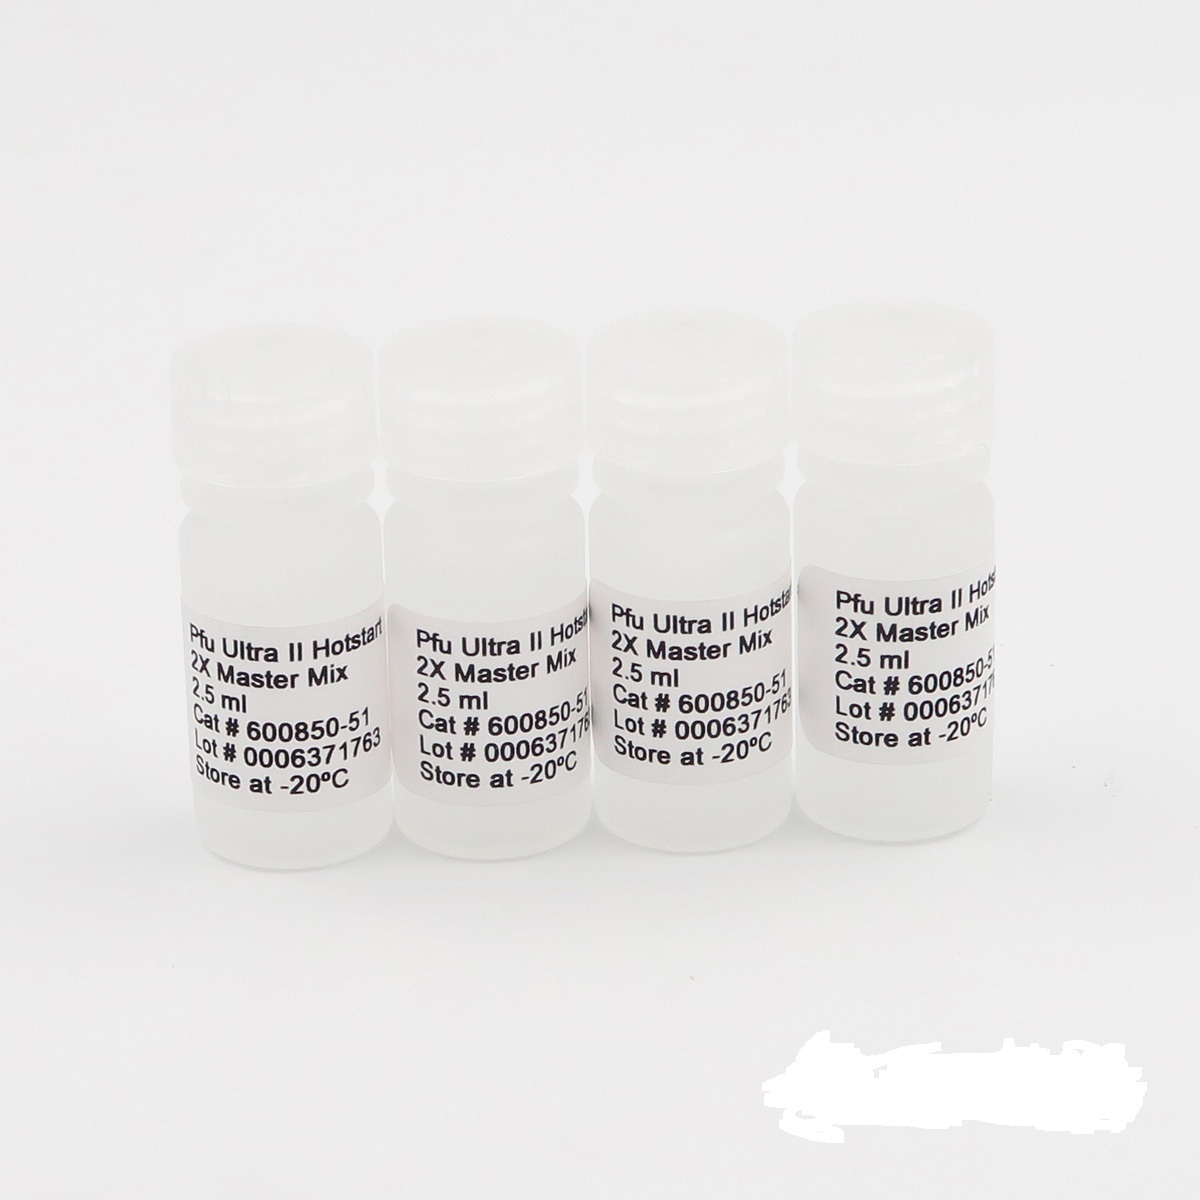 水稻黄单胞菌PCR试剂盒